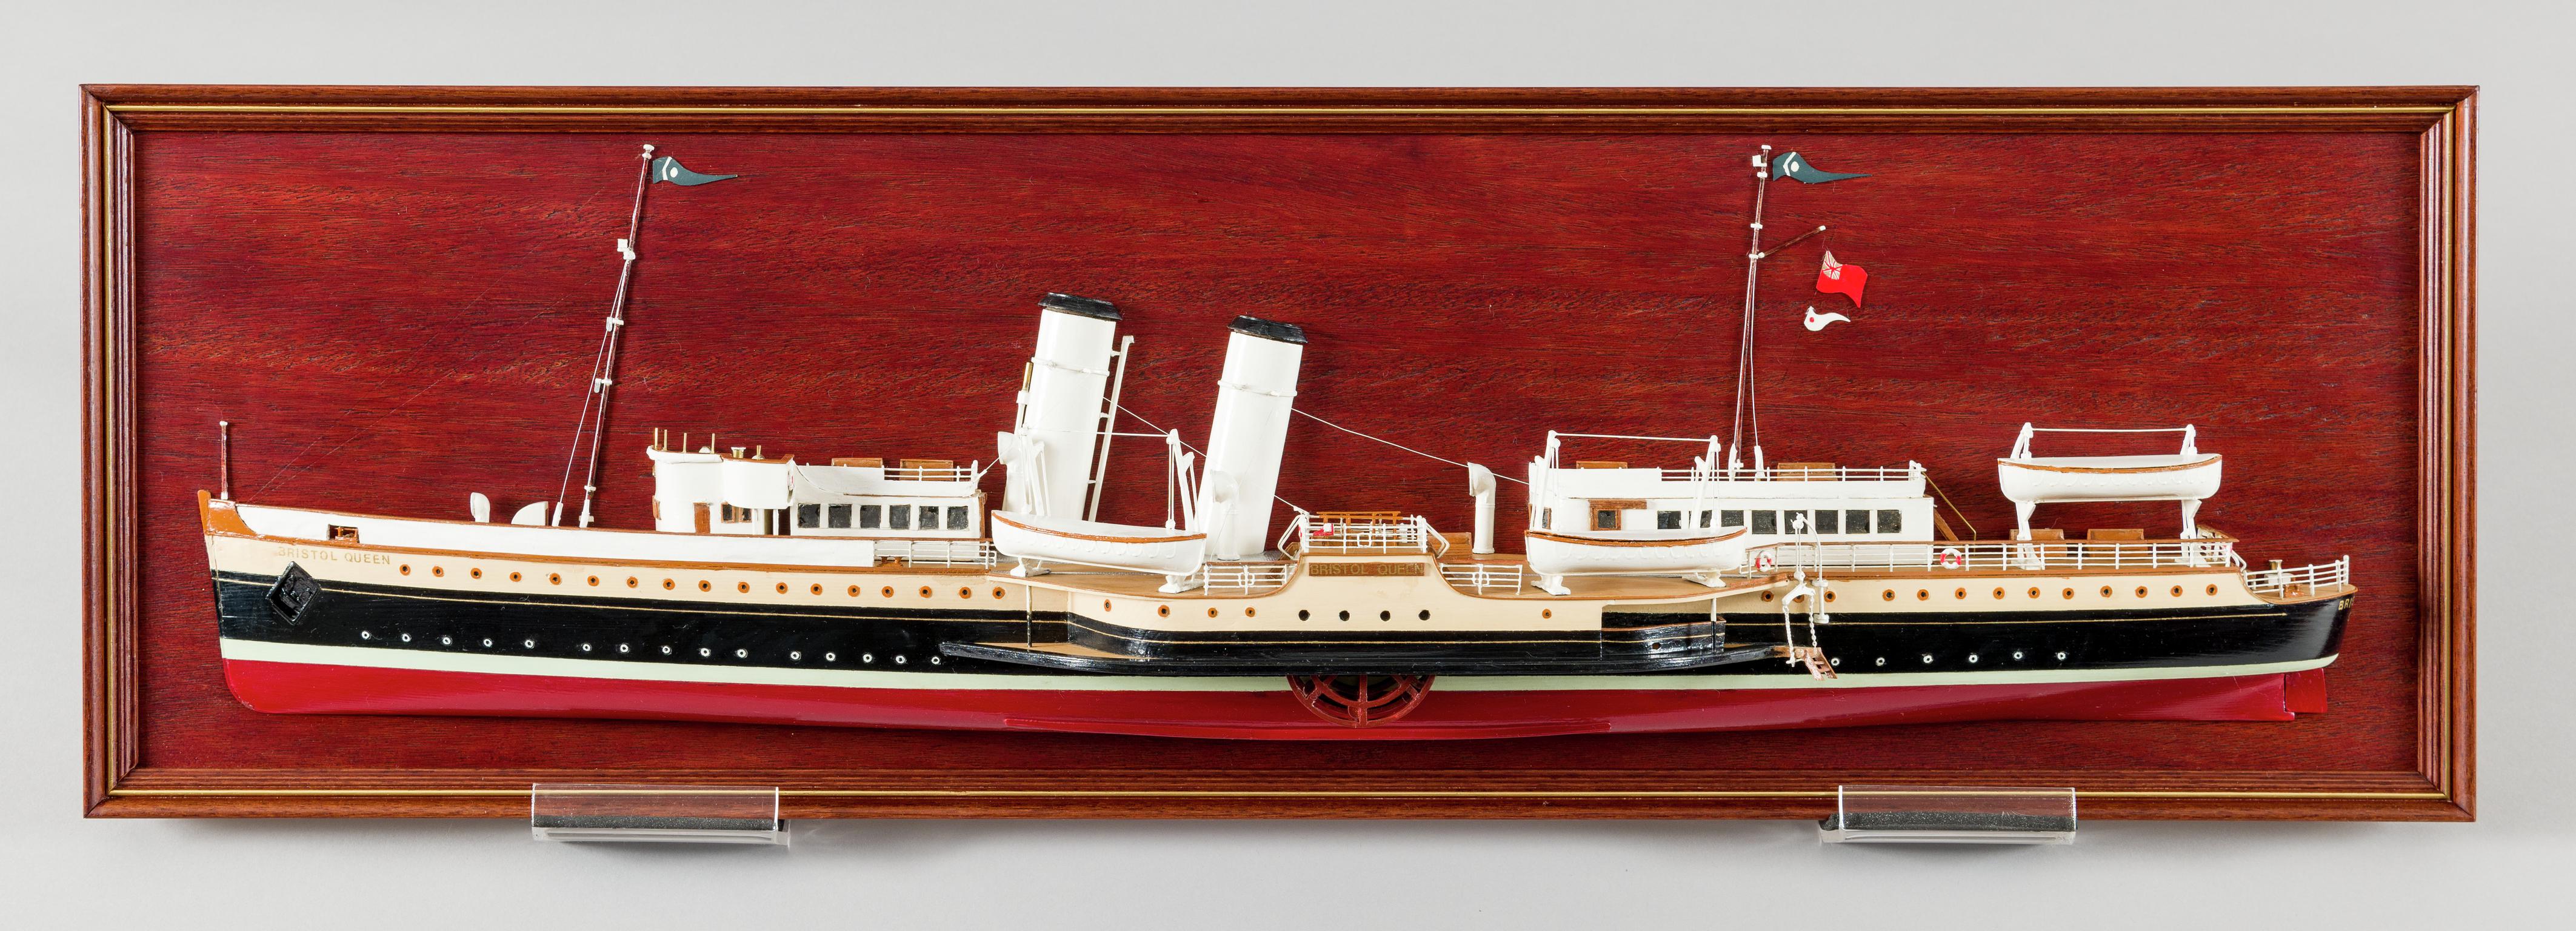 P.S. BRISTOL QUEEN, half hull ship model